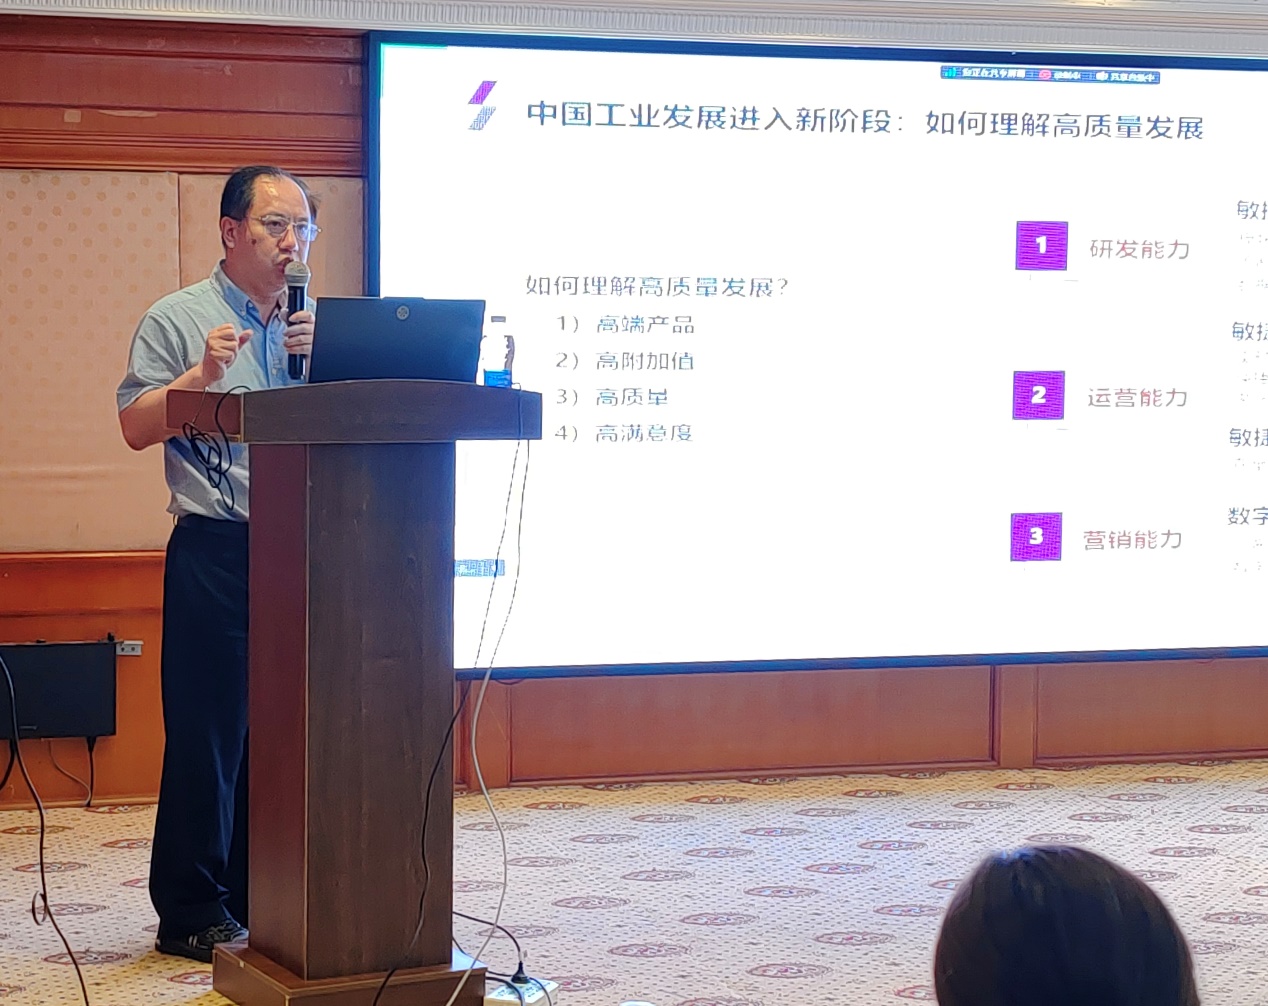 天河软件出席第十九届华东地区工业工程（IE）教学研讨会暨数字经济时代人才培养高峰论坛（2023）并做主题分享-喵科技网